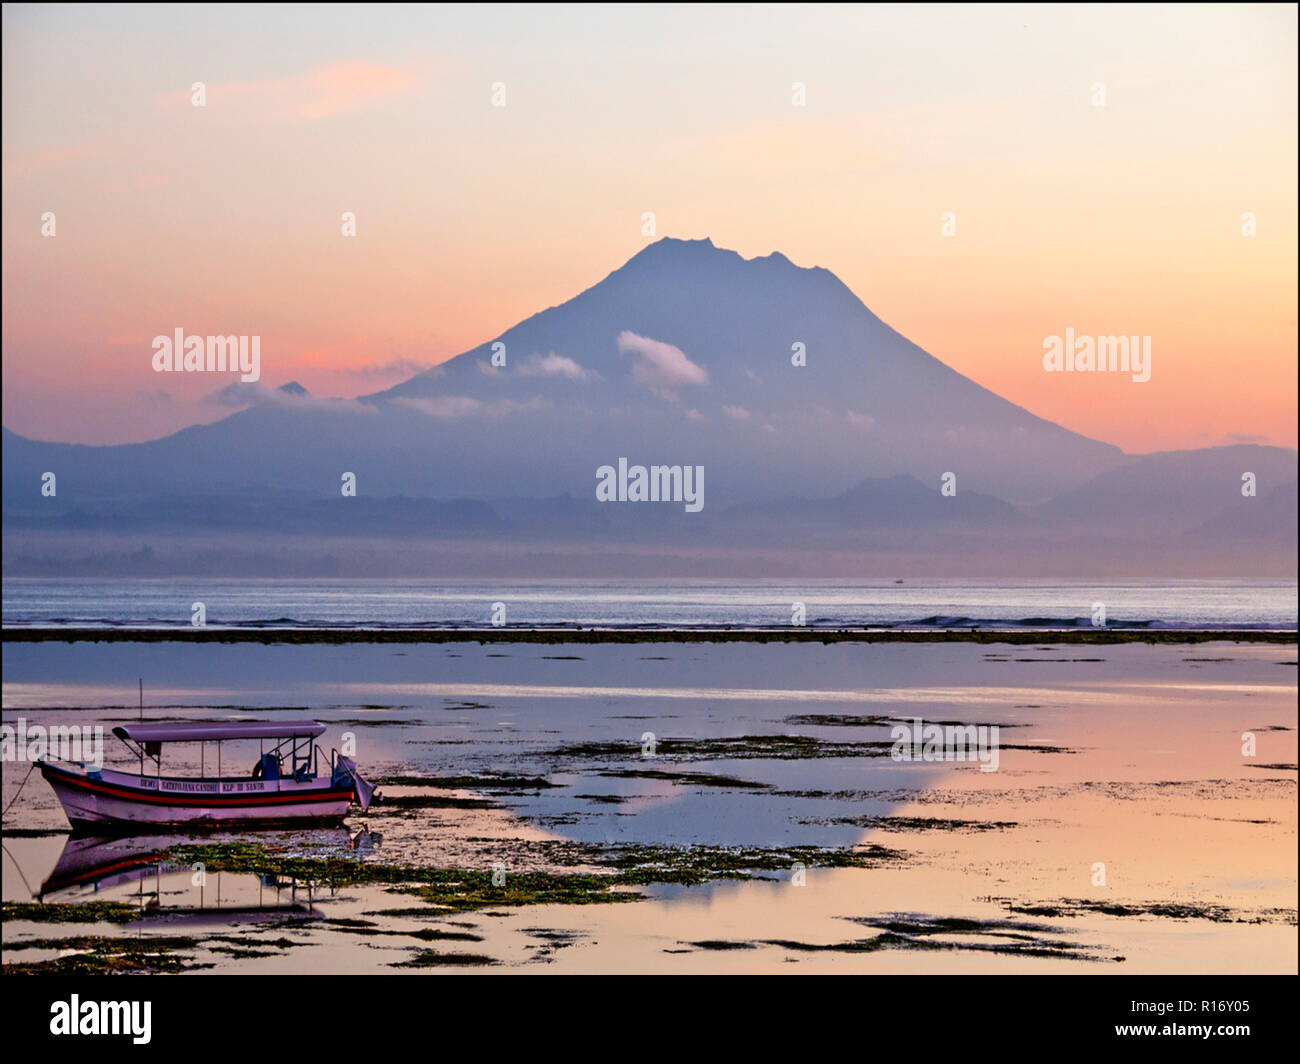 Am frühen Morgen Sonnenaufgang mit Blick auf den Mount Agung in Sanur Bali Indonesien. Stockfoto